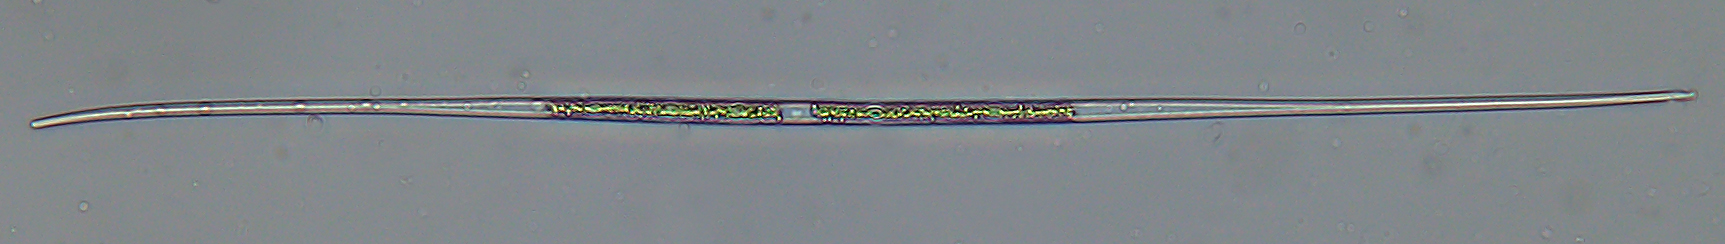 Closterium aciculare zöldalga, mérete kb. 500 x 6 mikrométer. Fénykép: Vörös Lajos